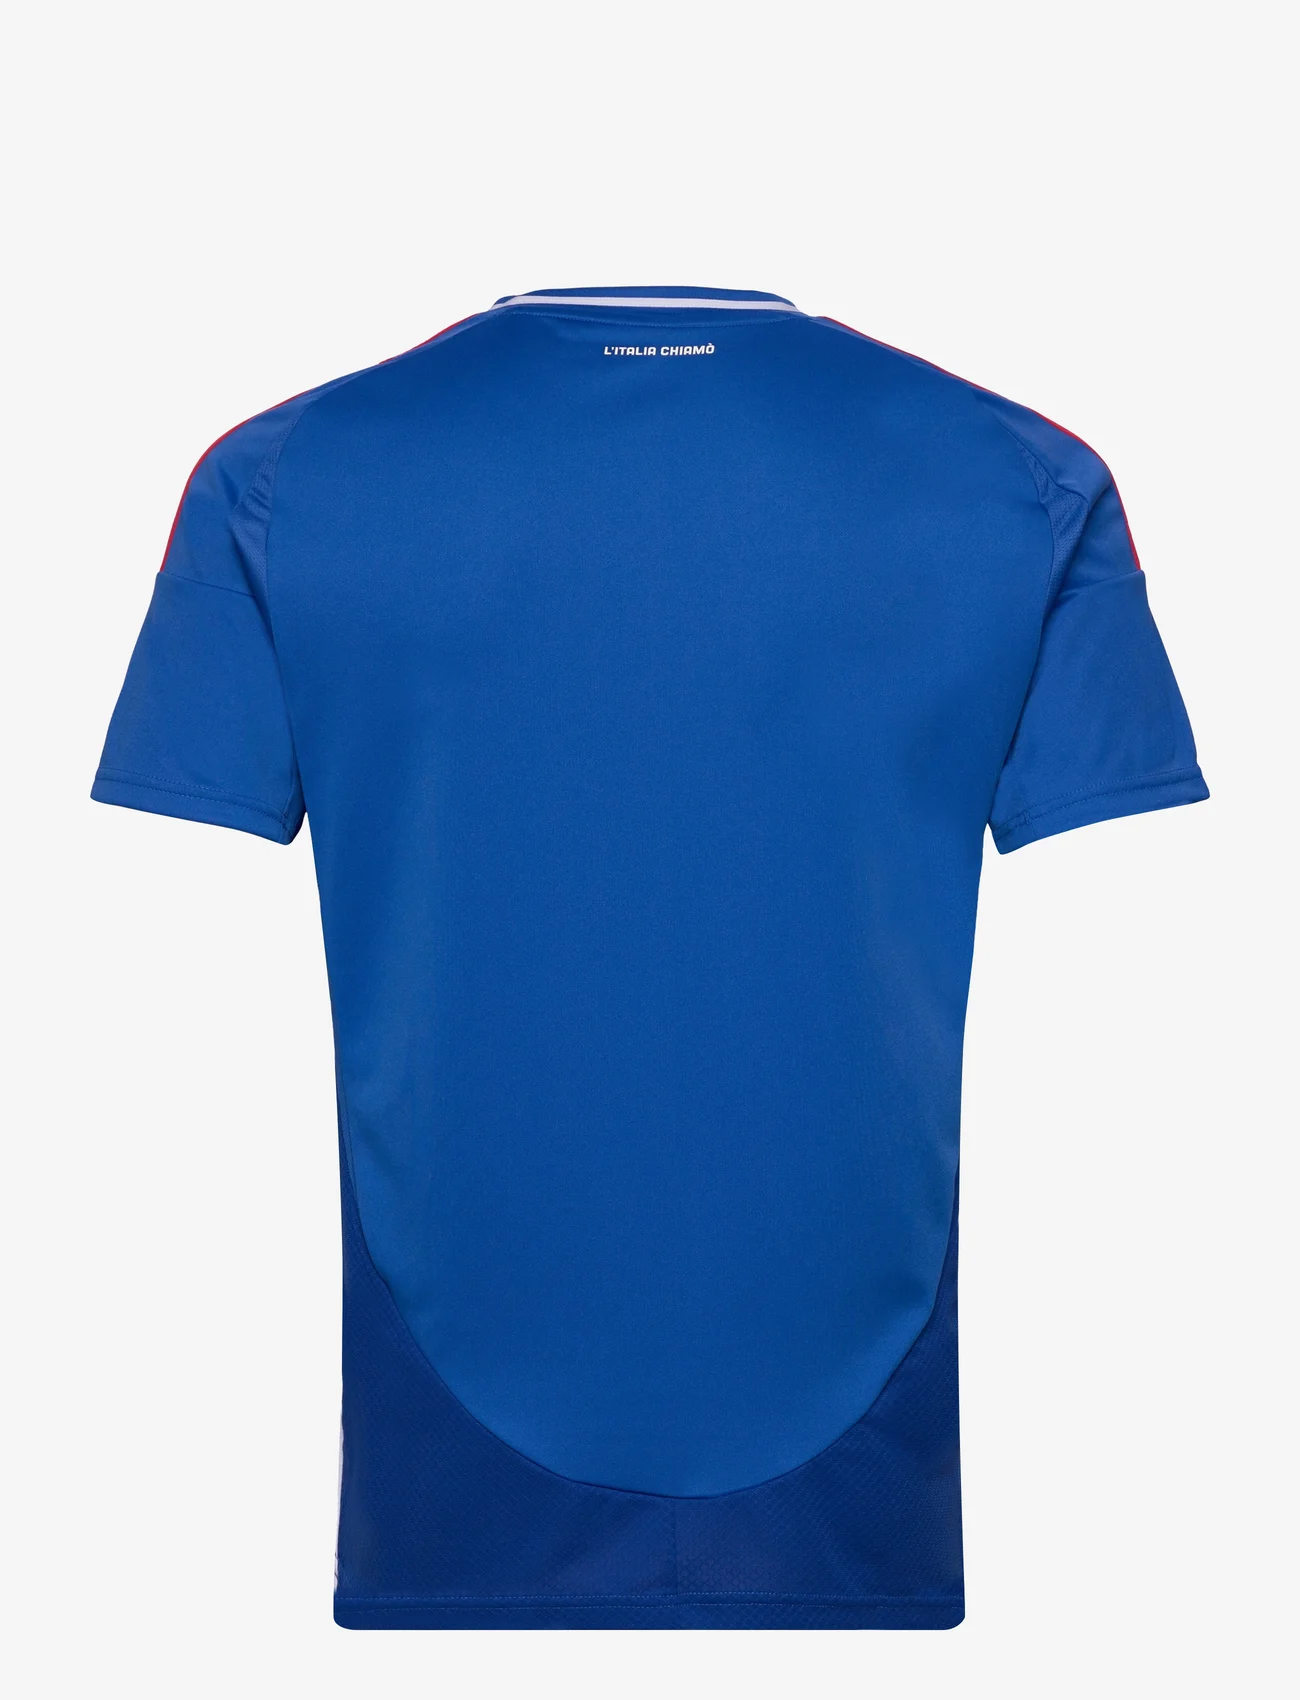 adidas Performance - FIGC H JSY - futbolo marškinėliai - blue - 1